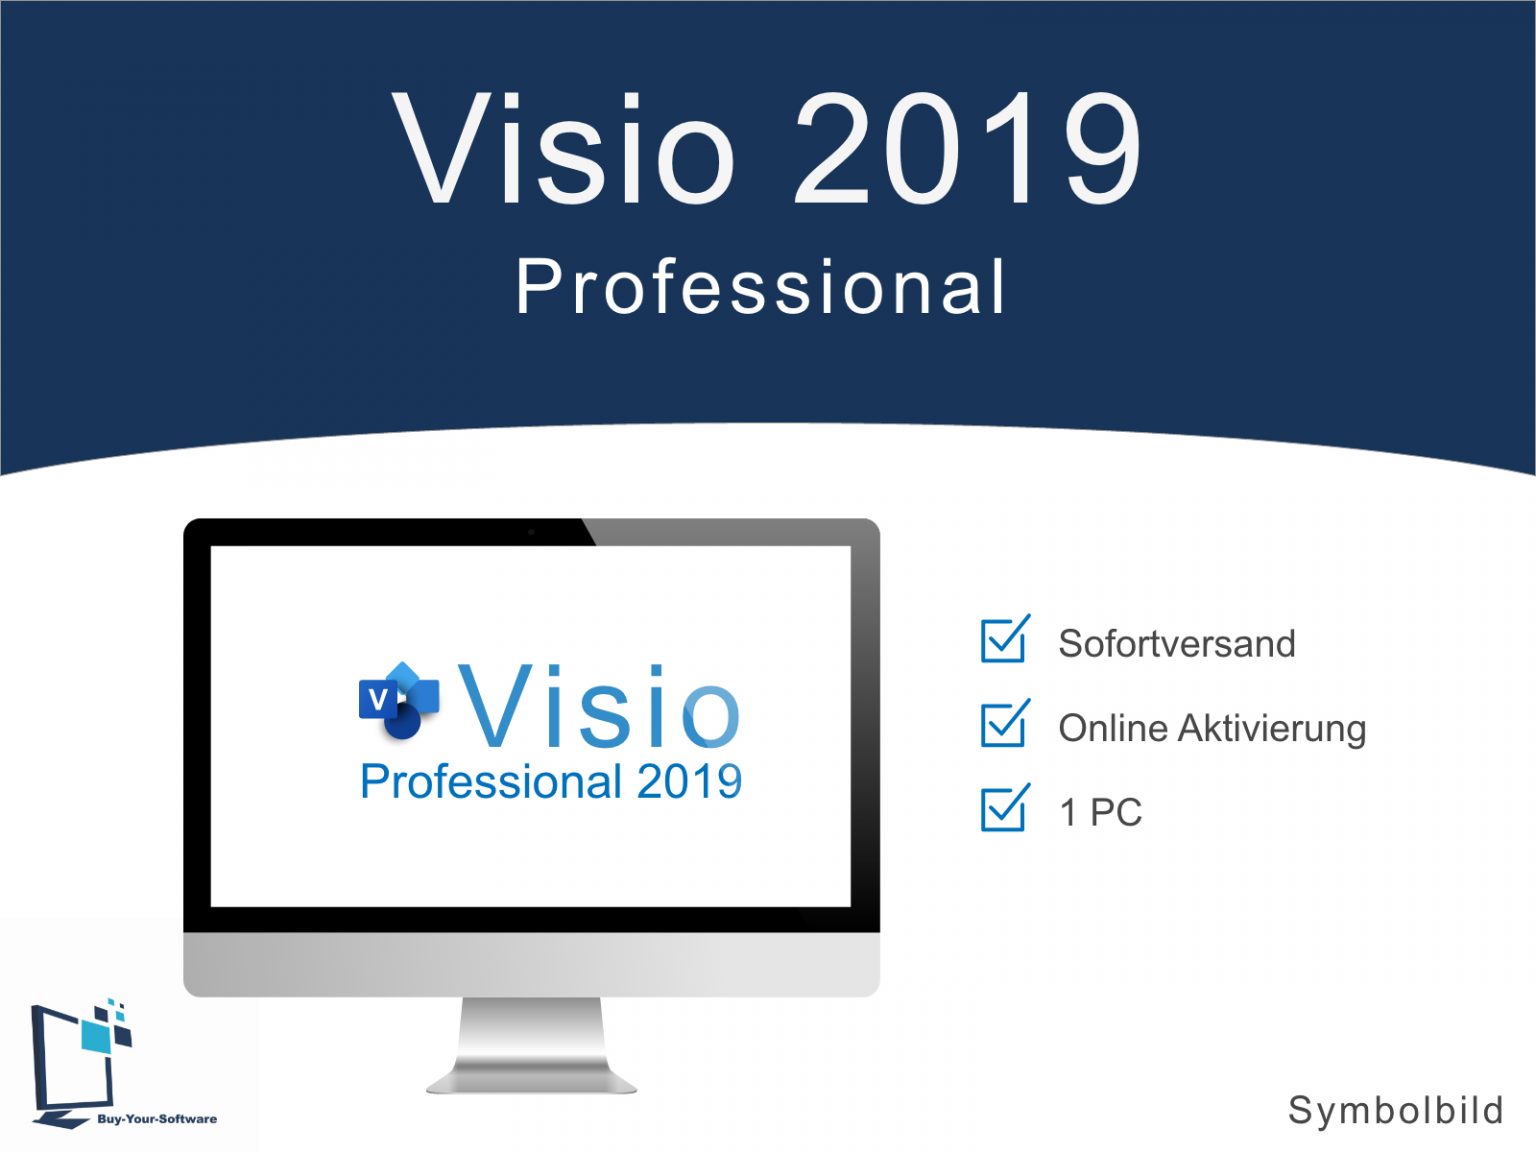 visio professional 2019 window description